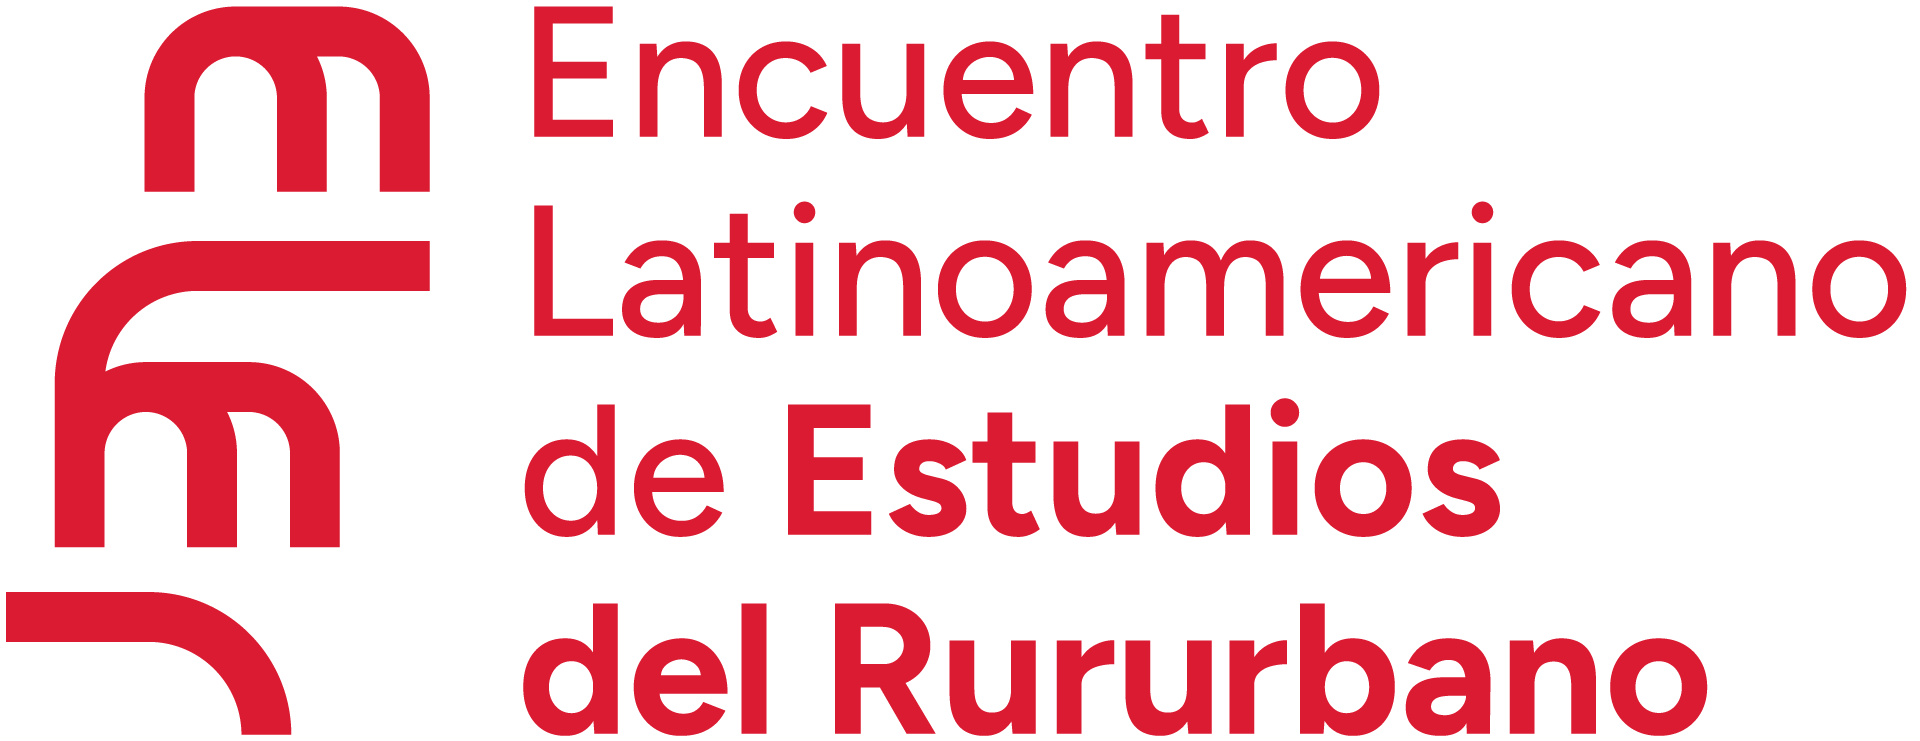 3er Encuentro Latinoamericano de Estudios del Rururbano